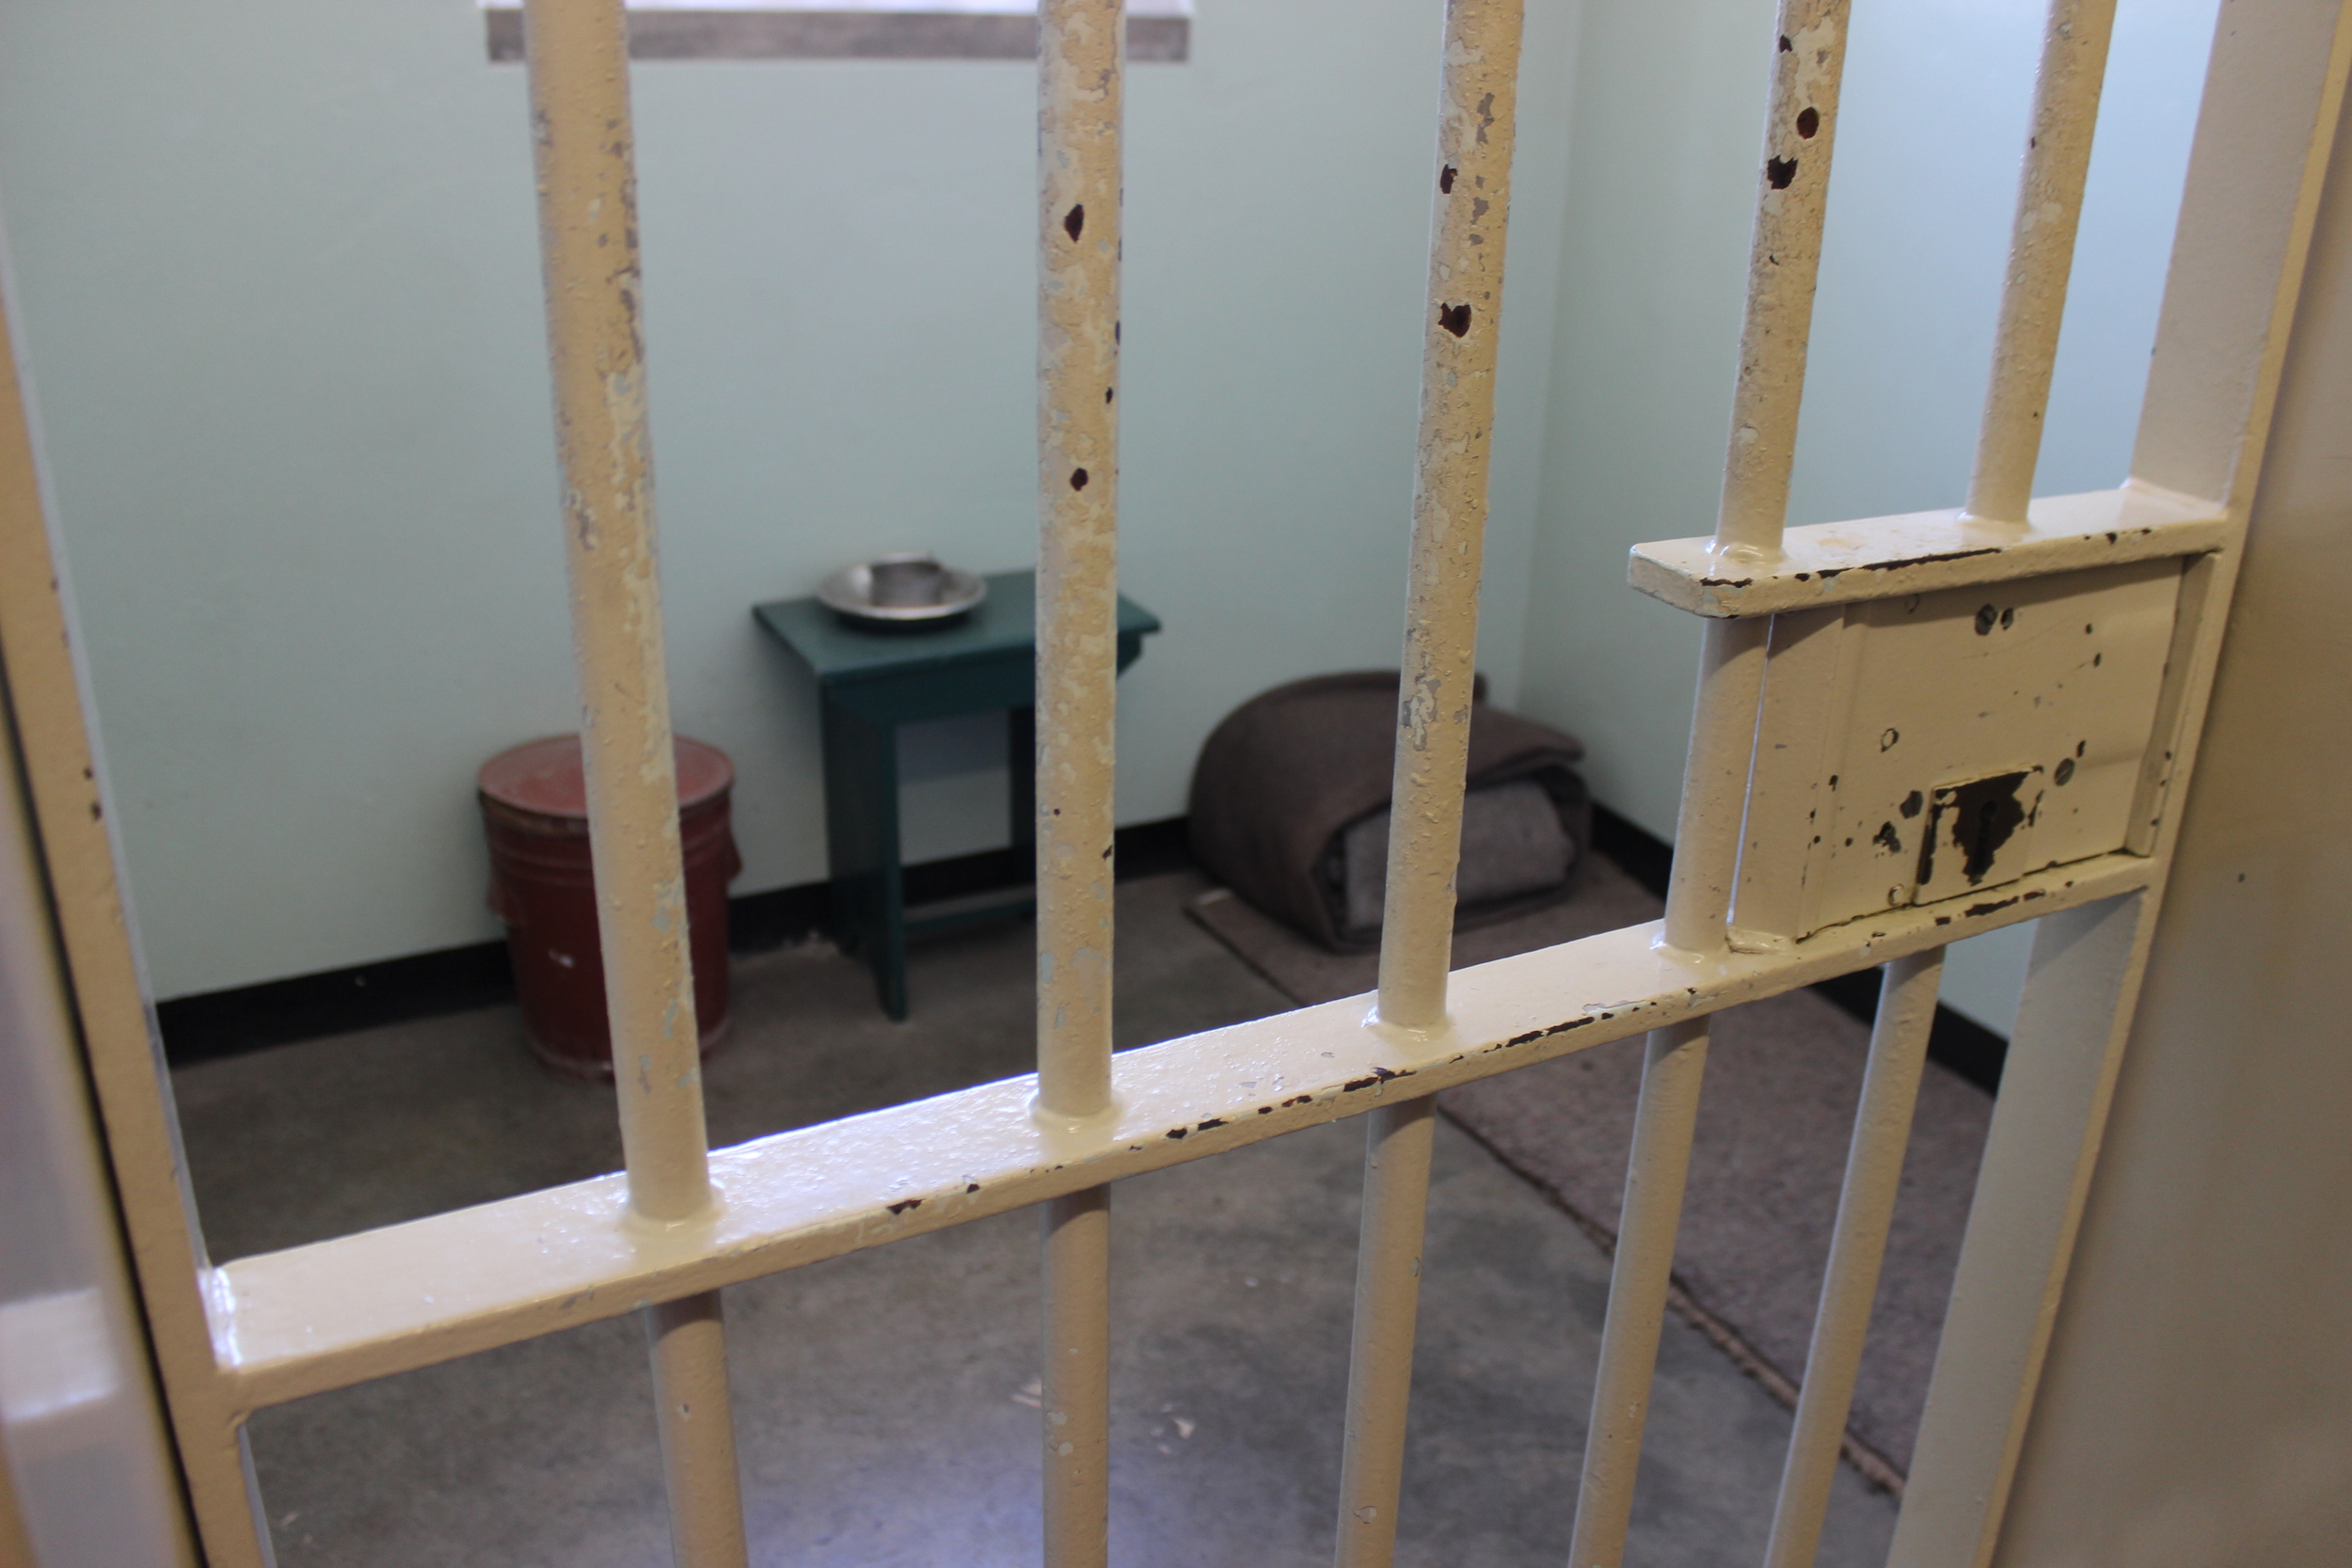  Nelson Mandela's prison cell 